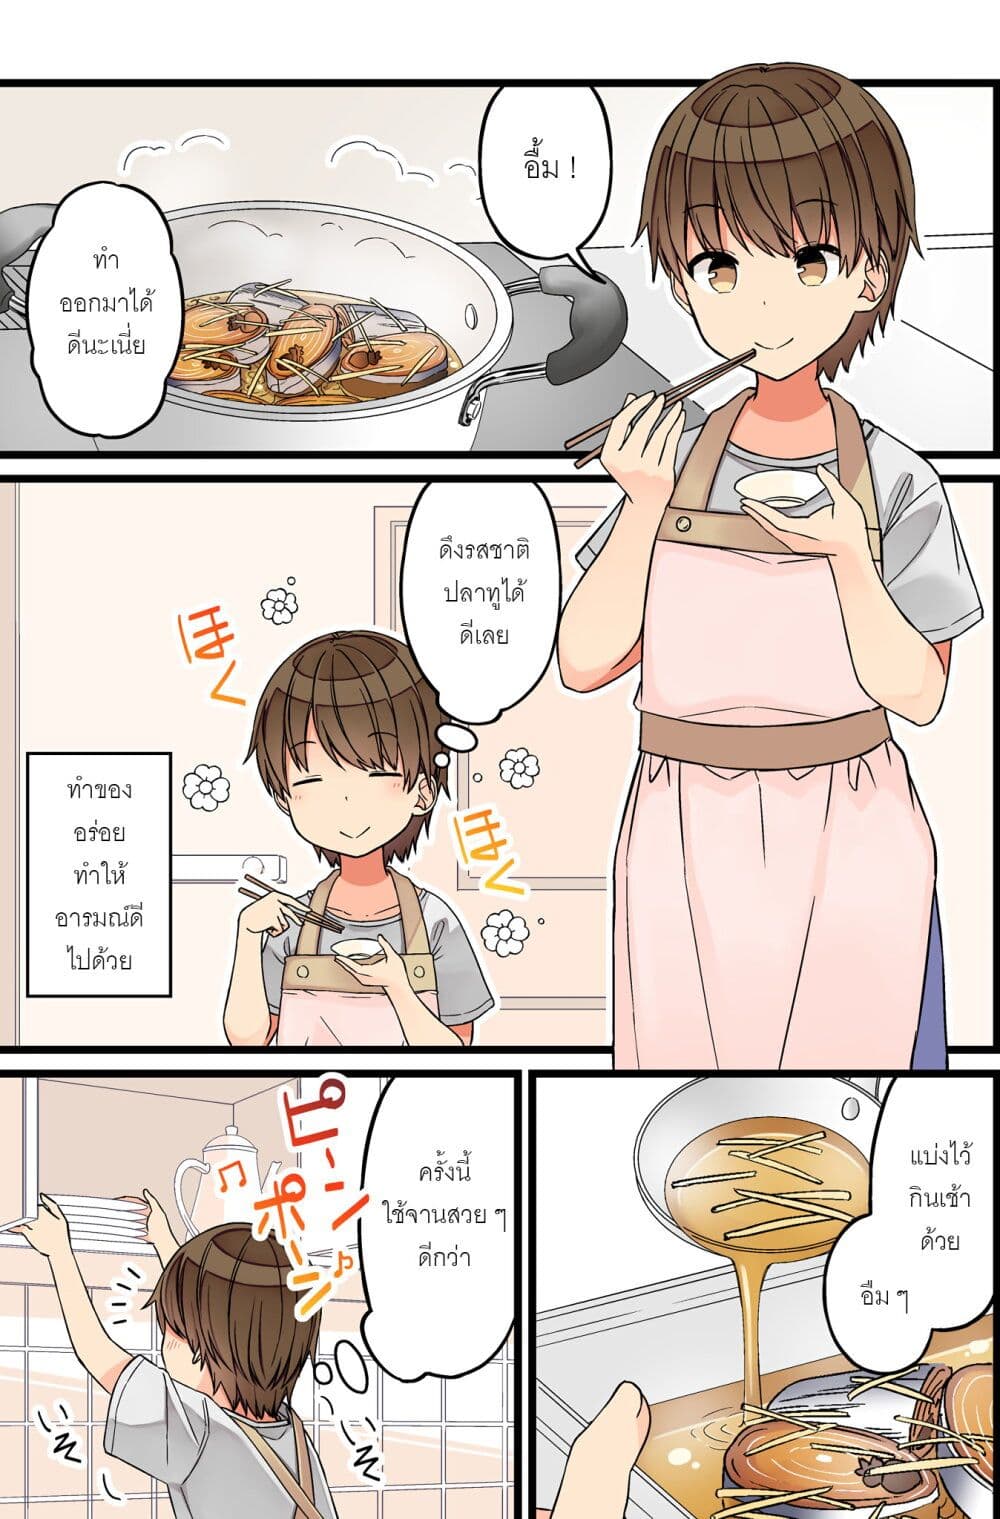 Riaru mo Tama ni wa Uso wo Tsuku เที่ยวไปกับสาวเกมเมอร์ 90-ทำของอร่อย ทำให้อารมณ์ดีไปด้วย (พลังห้าแฉก)